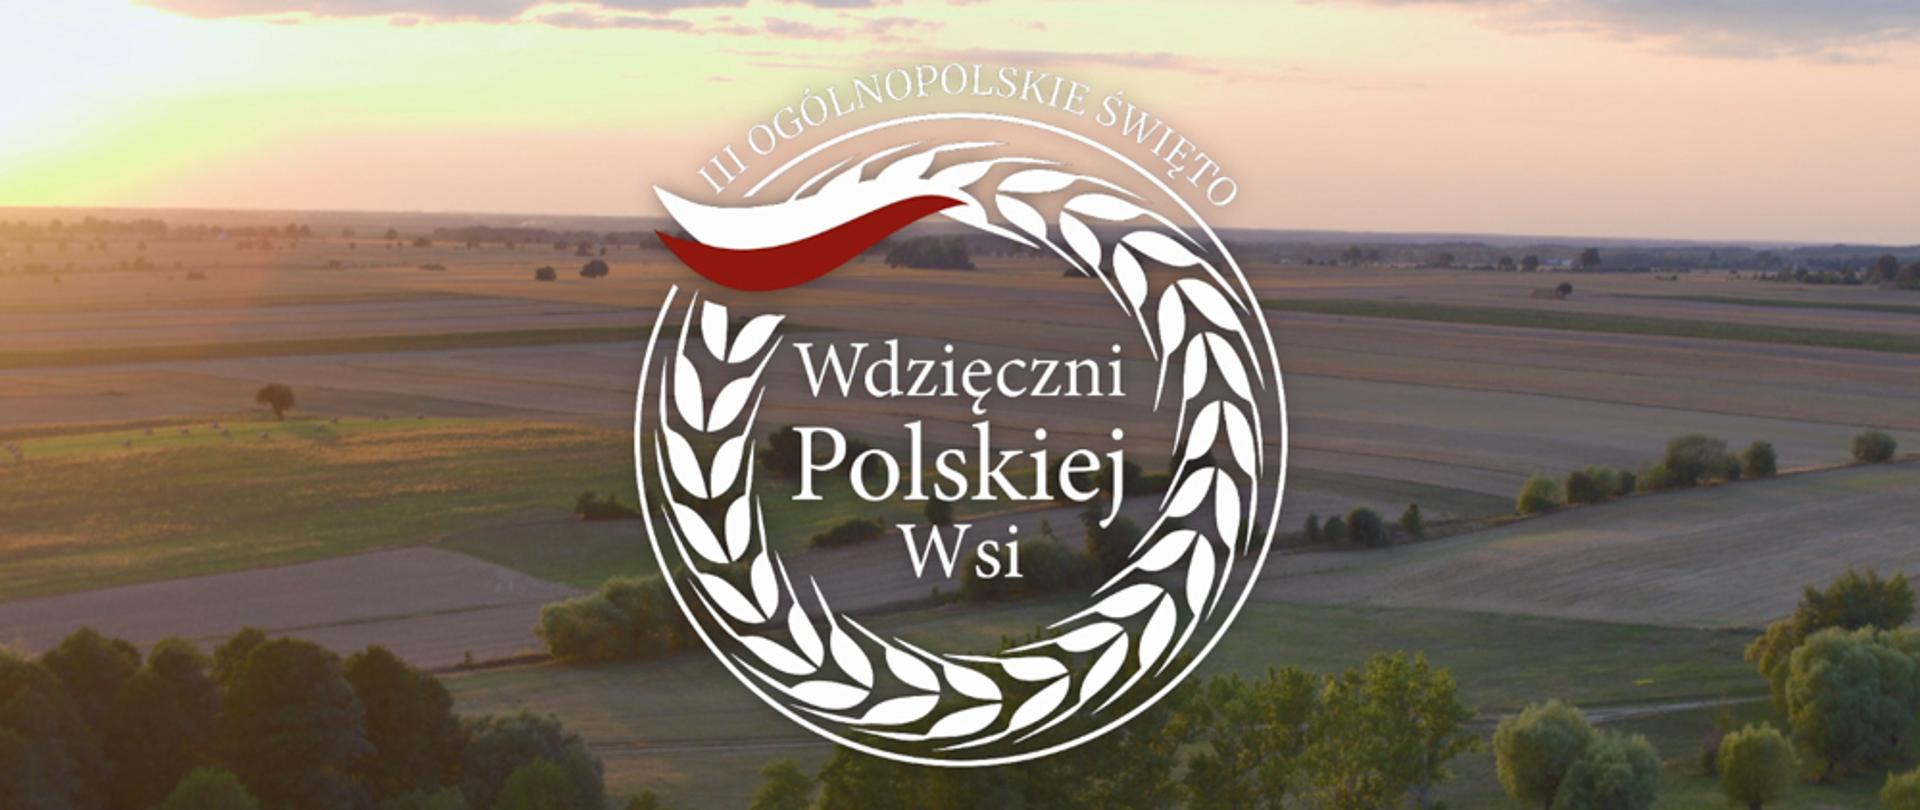 Wdzięczni polskiej wsi.